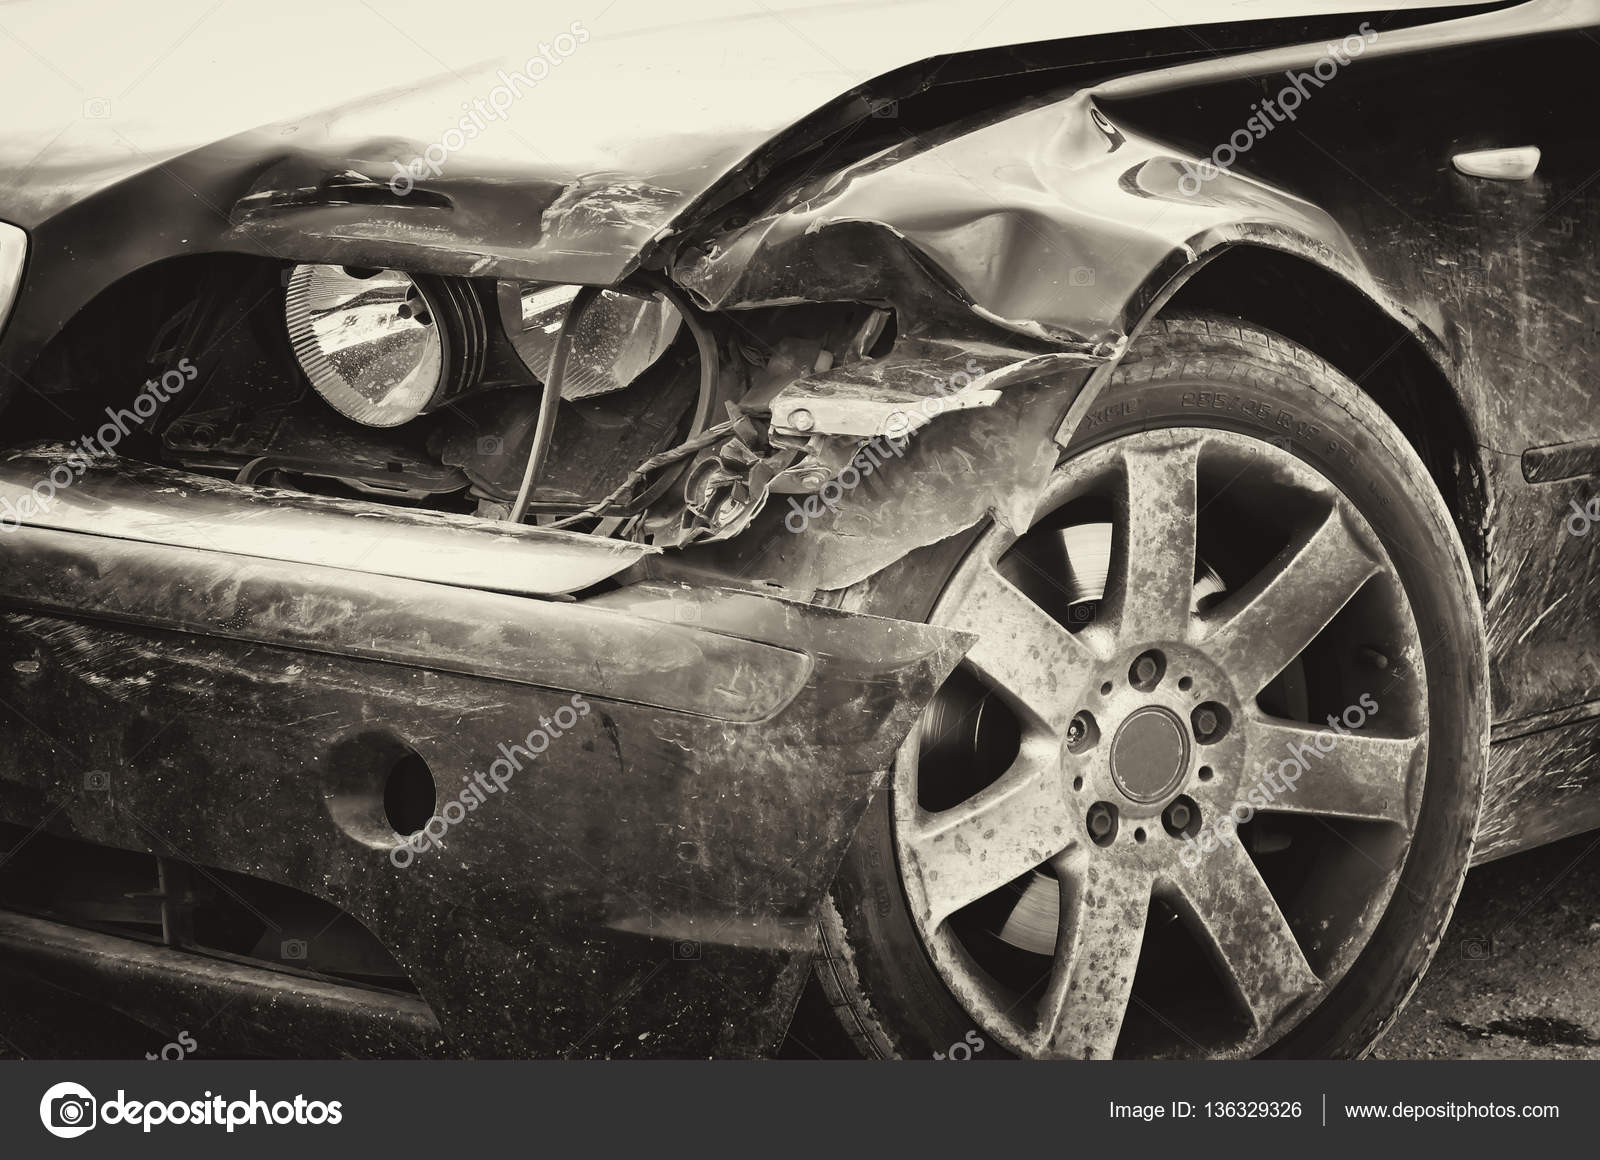 car accident composition